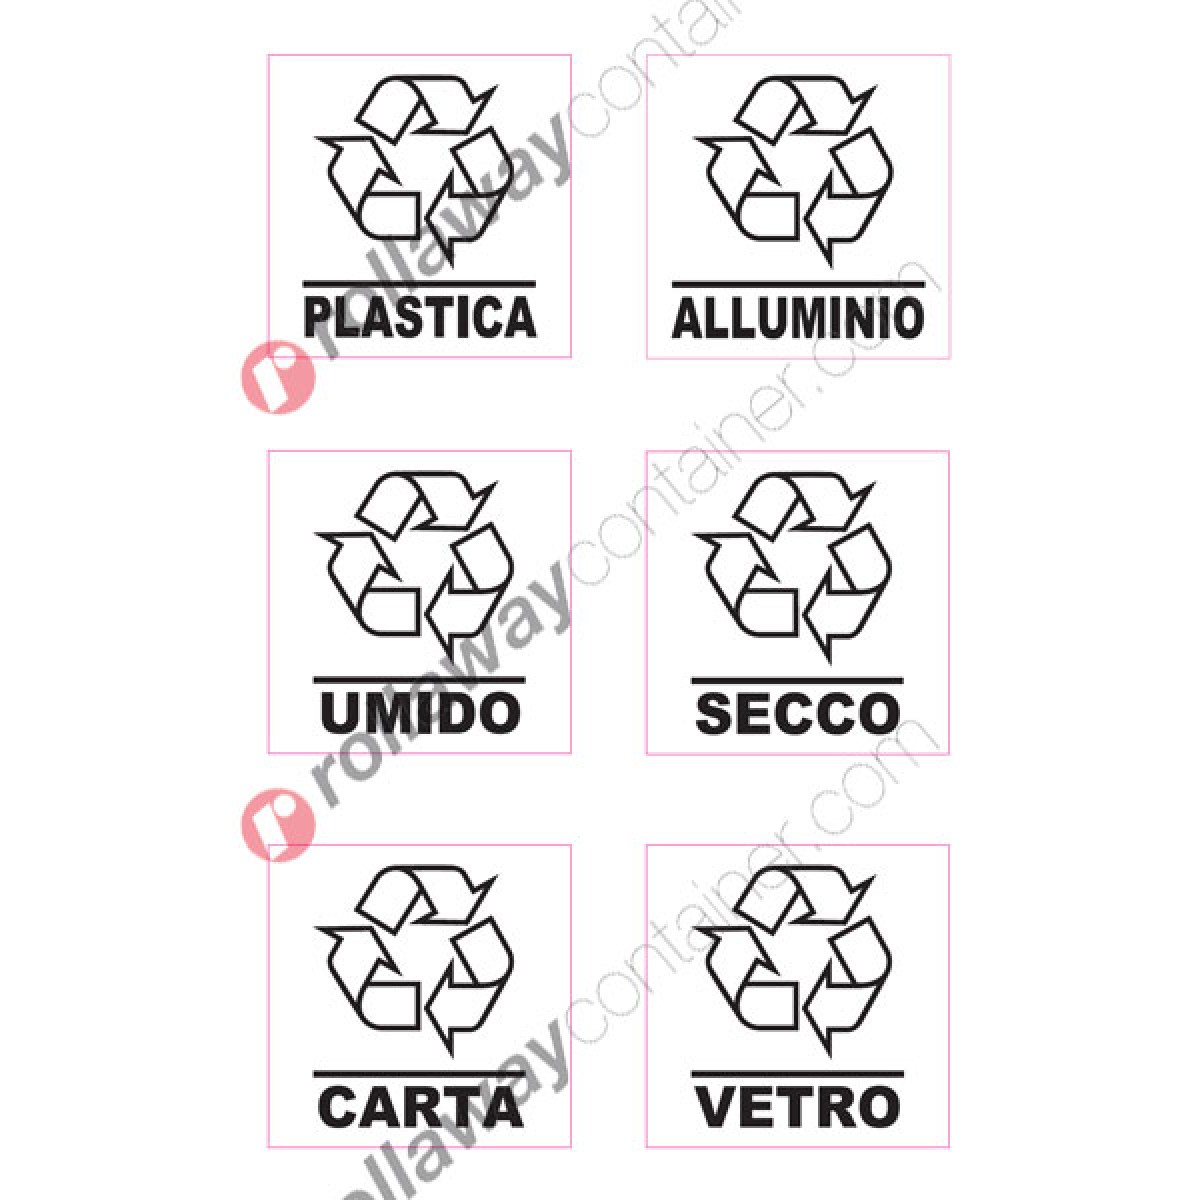 kamiustore Etichette adesive per Raccolta differenziata Colorate in Vinile prespaziato 10x3,6 cm Adesivi per bidoni e pattumiere 